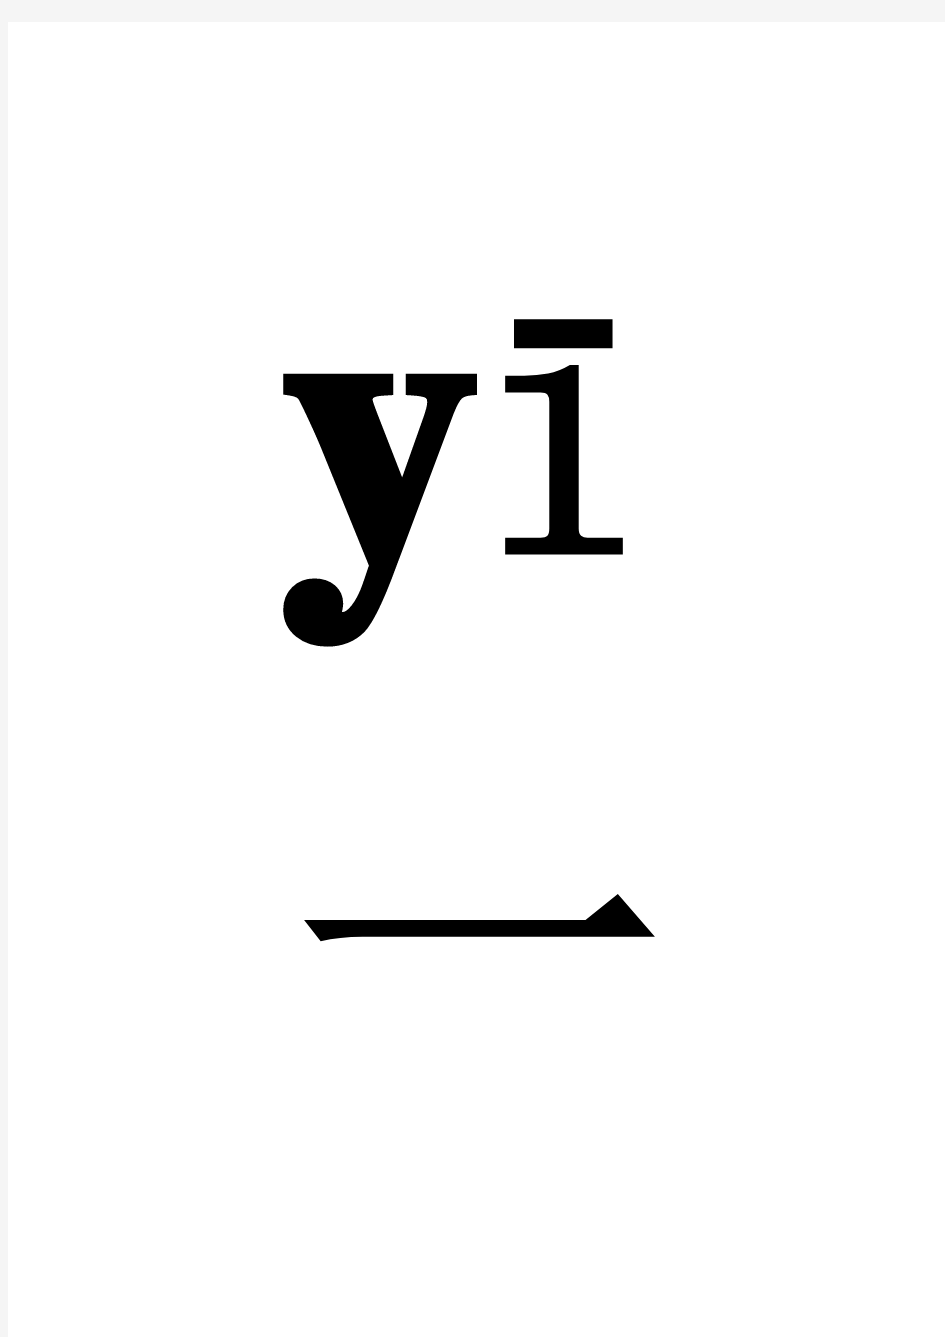 数字1到10的汉语拼音音标